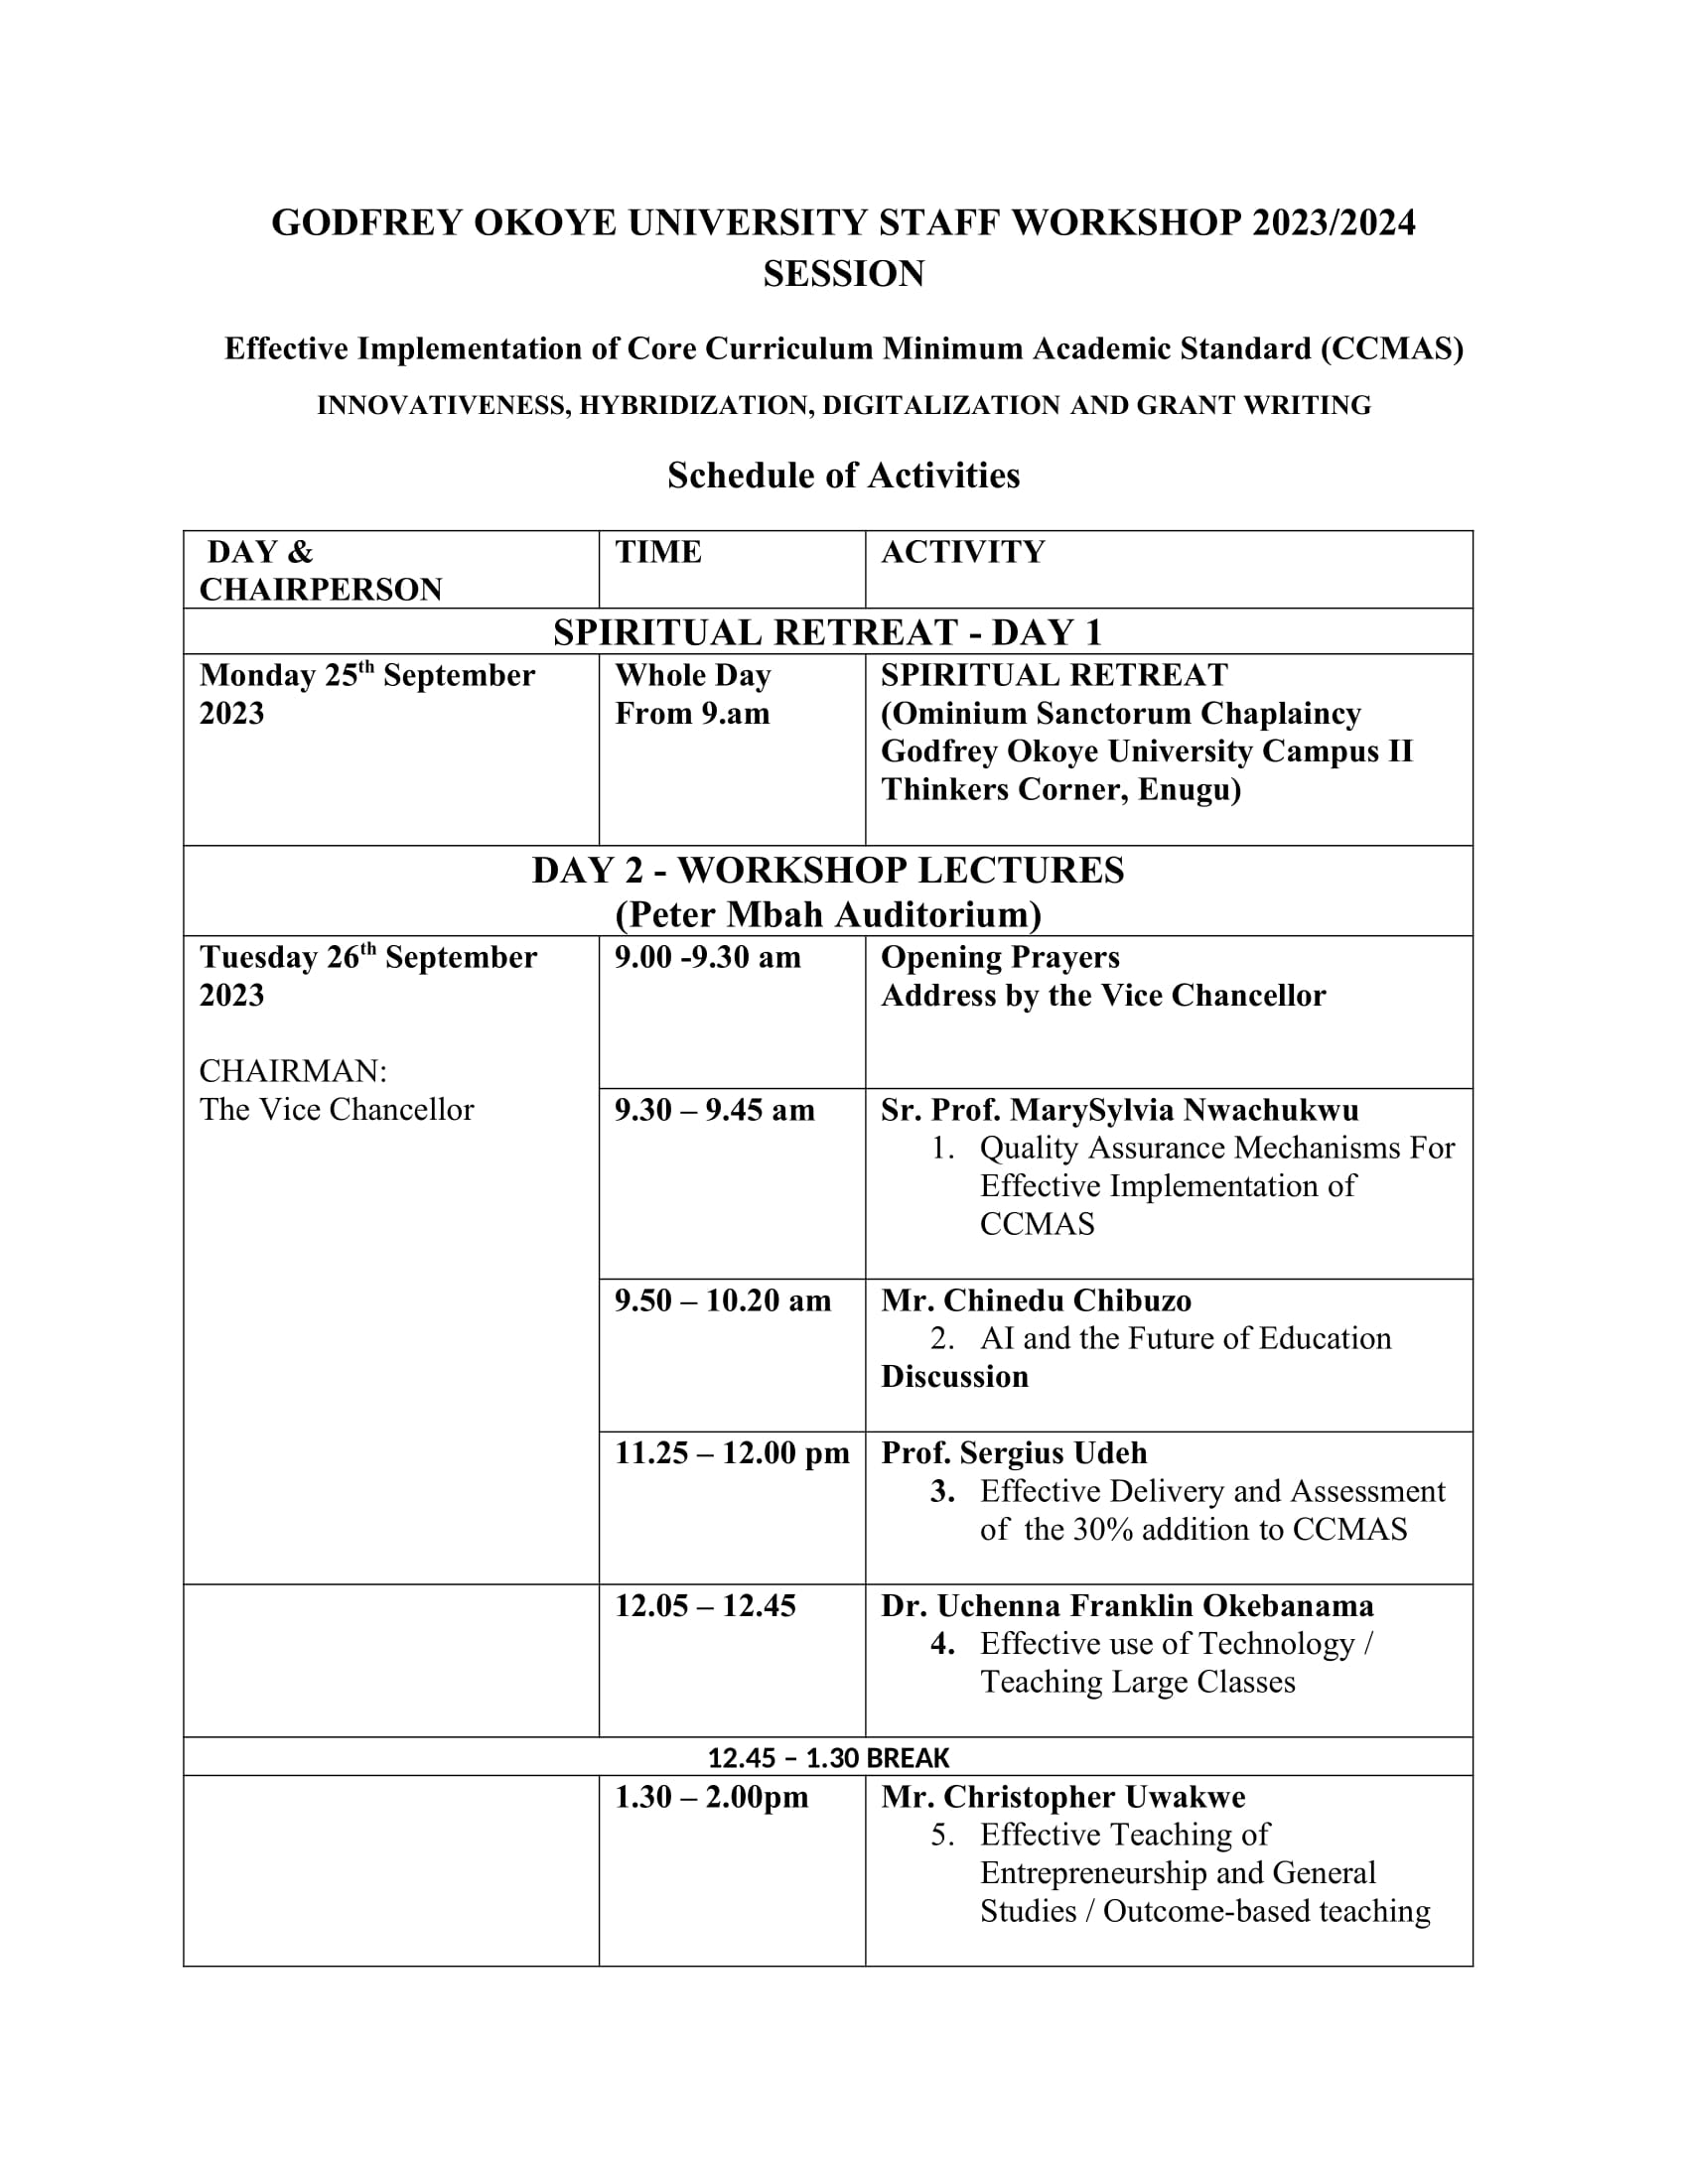 Staff Retreat and Workshop Schedule 2